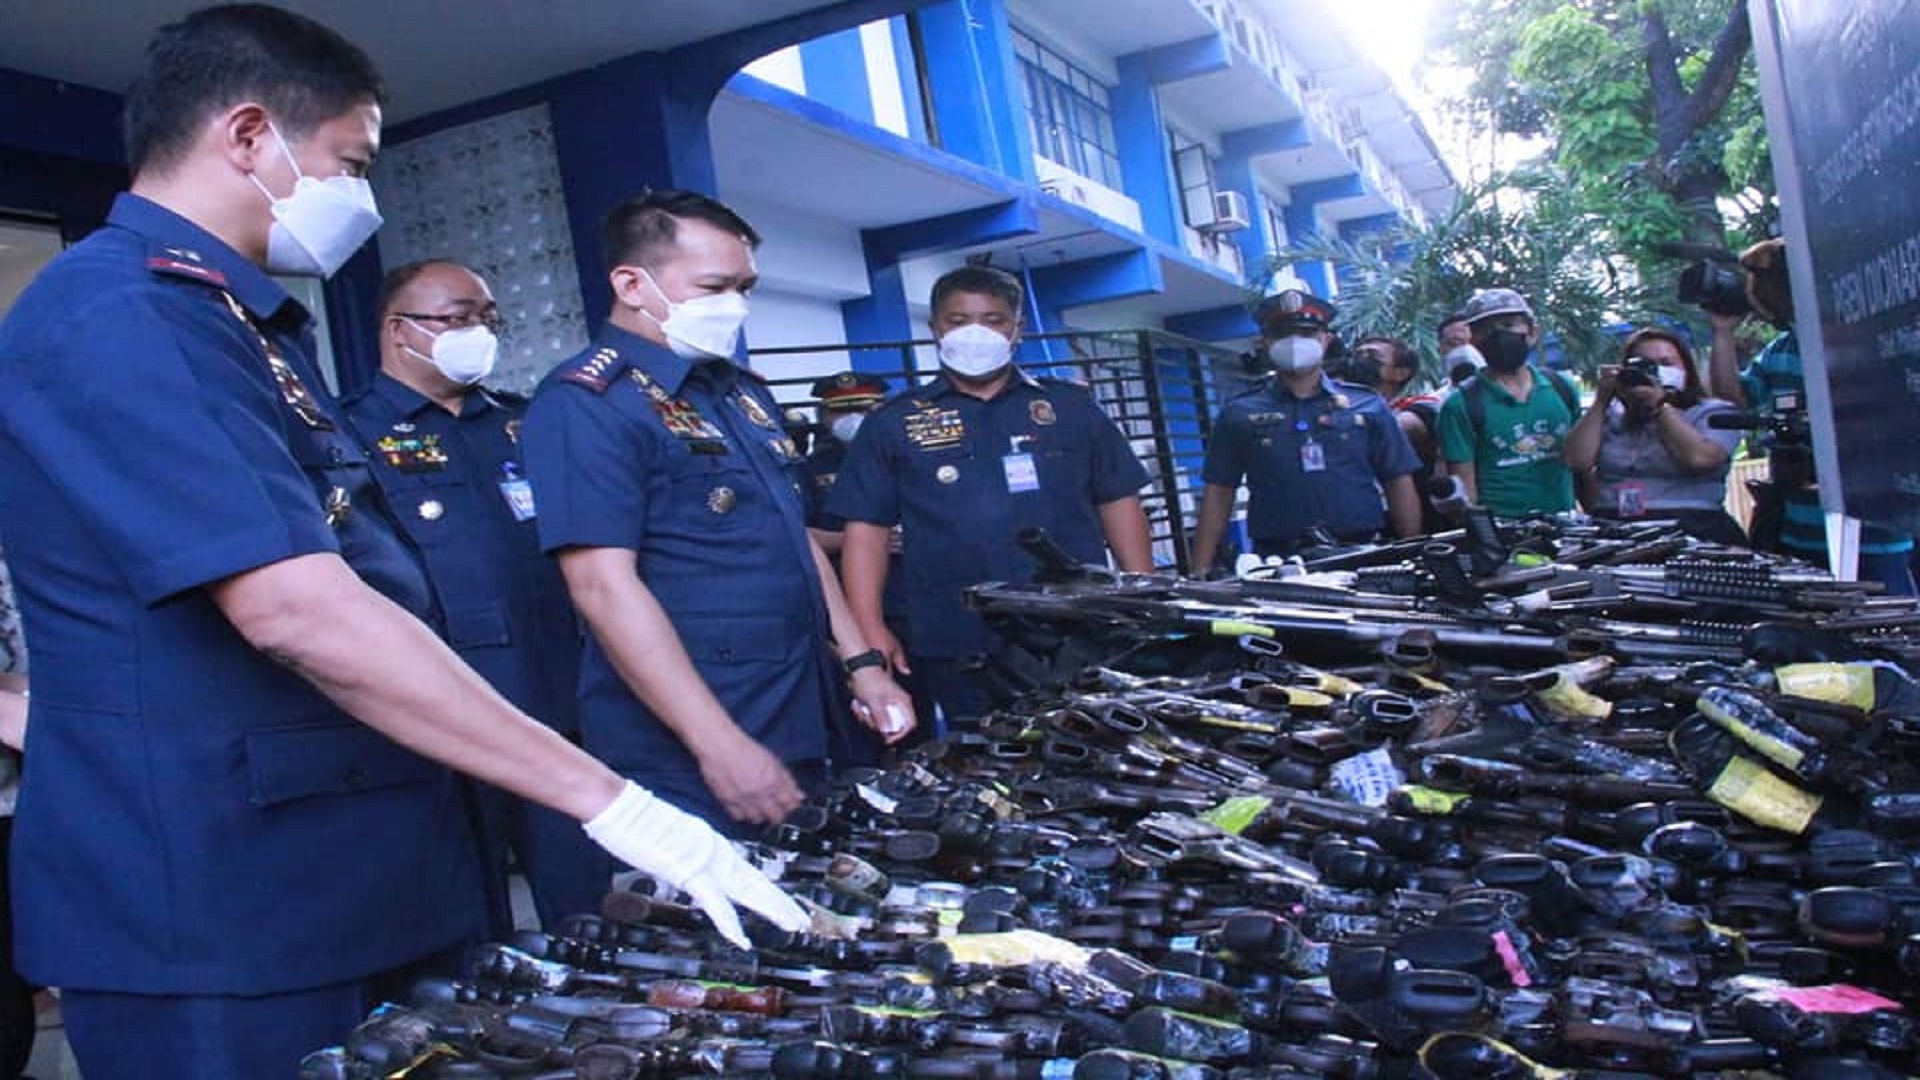 526 na loose firearms nakumpiska ng PNP sa ikinasang street inspections